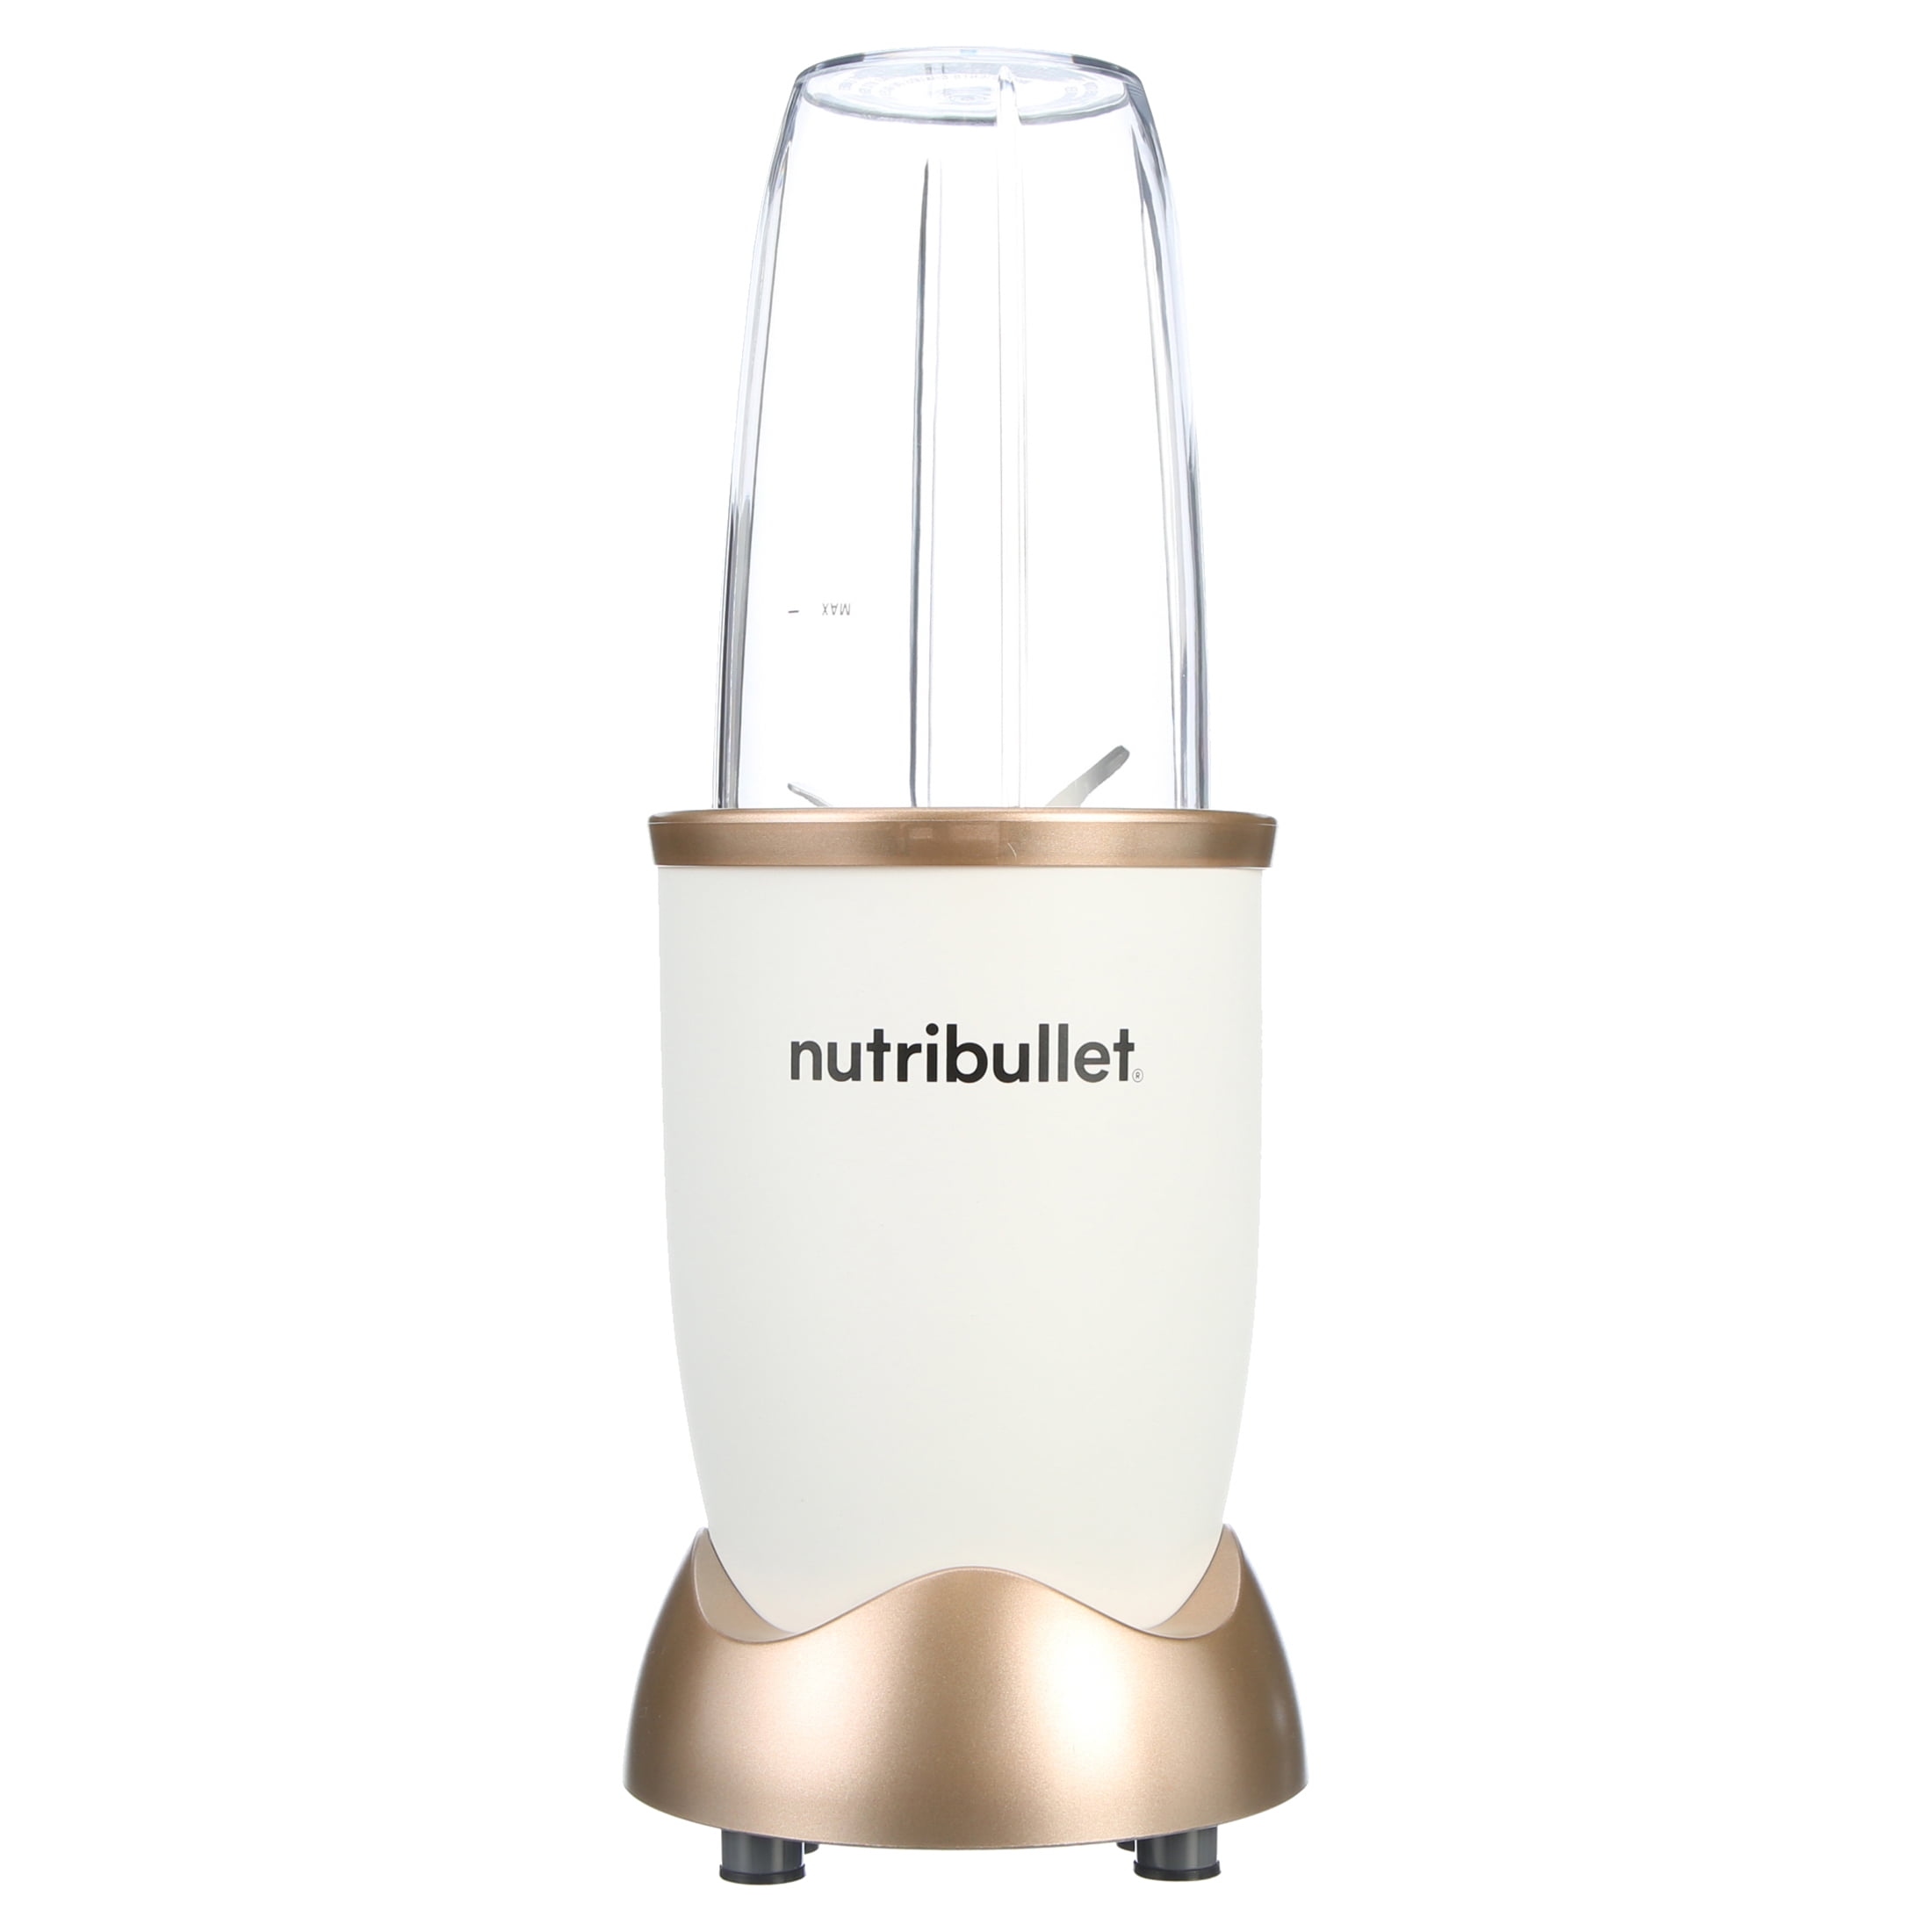 Nutribullet 500W : Best Personal Blender For Busy Lifestyle - CHELSHEAFLO